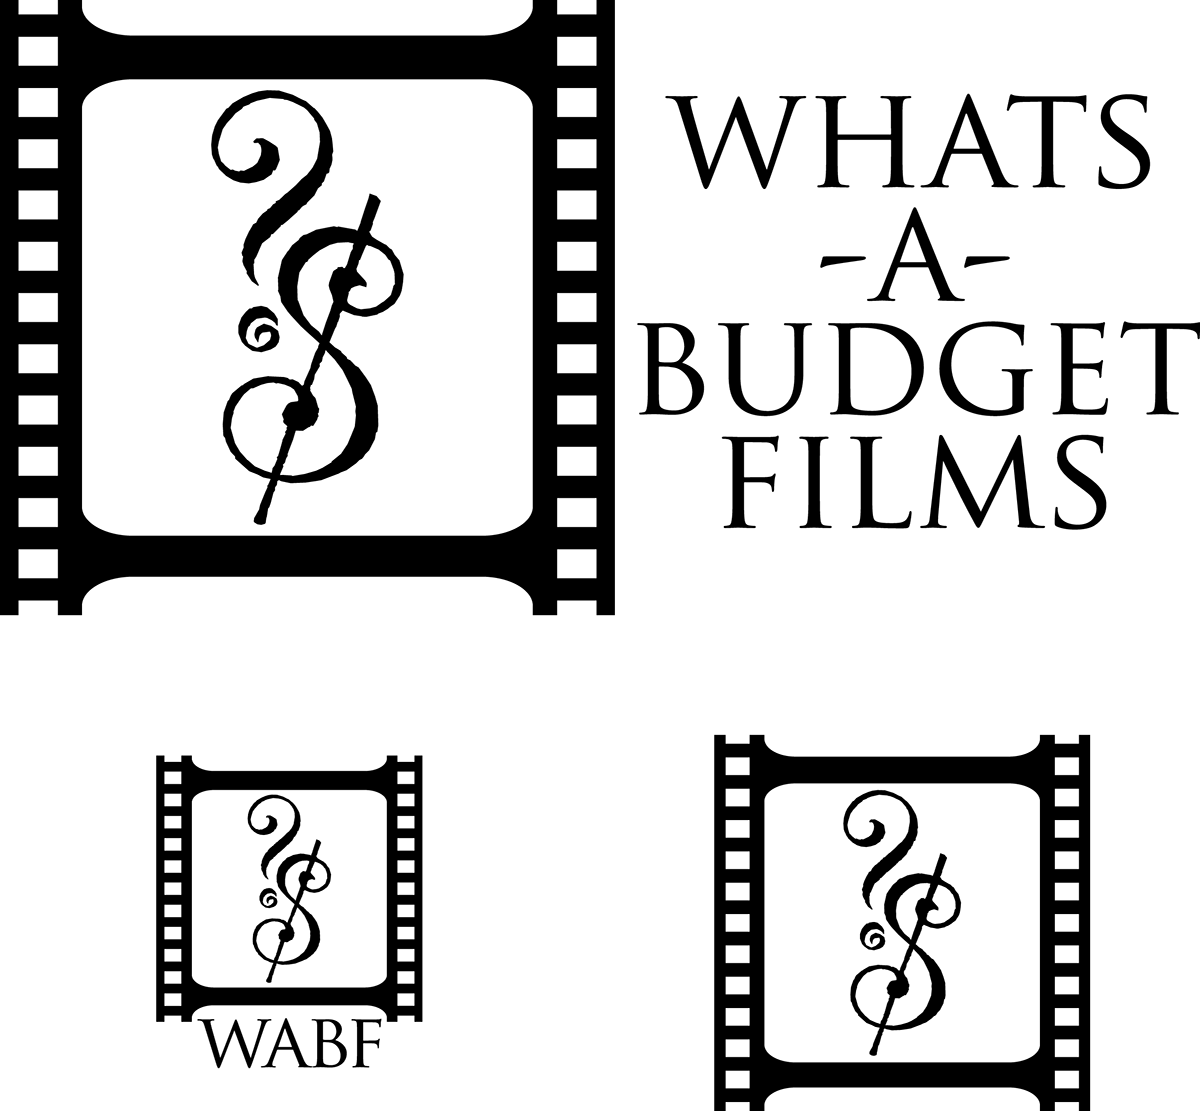 Logo Design  logos  whatsabudget films